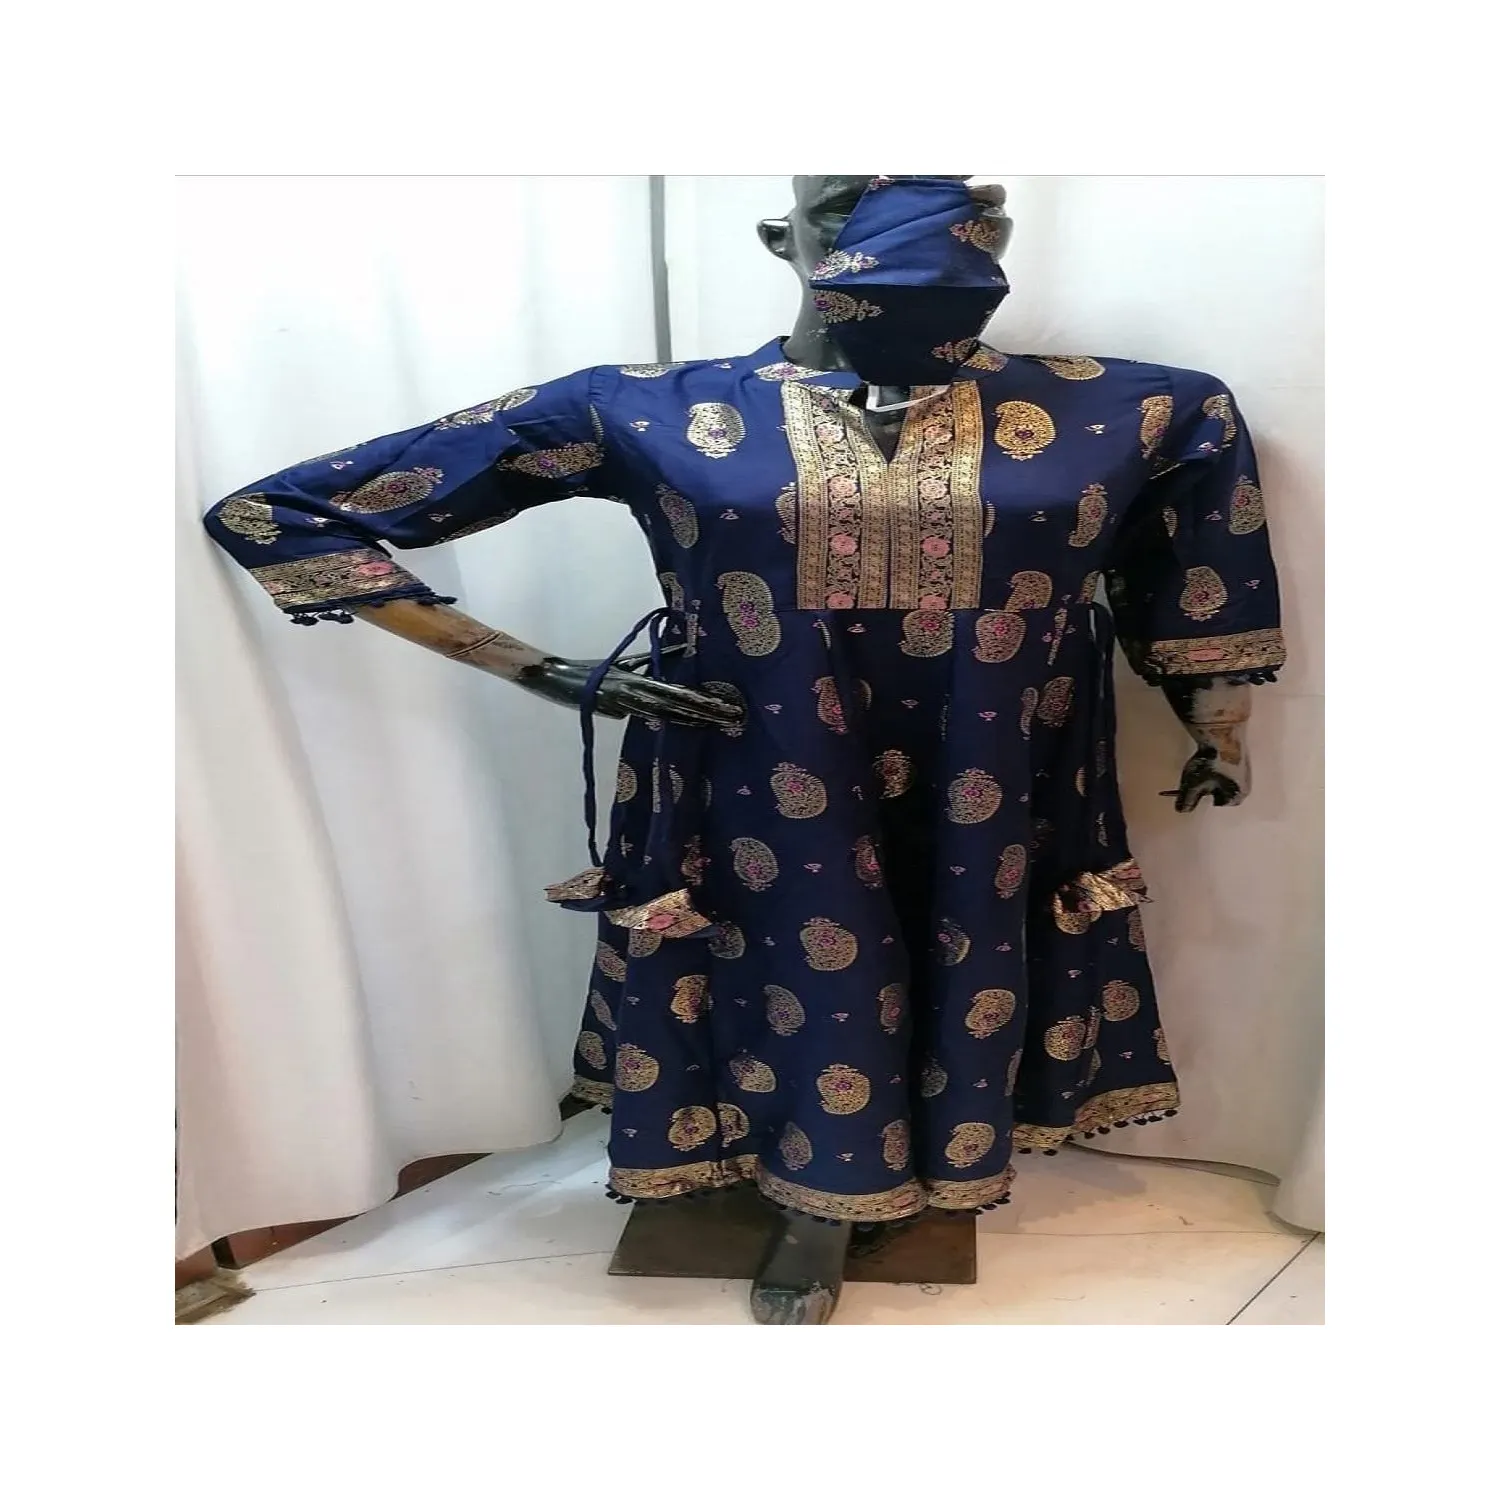 New Ấn Độ Pakistan nhà thiết kế Dresses thêu/anarkali áo choàng dài shalwar kameez bán sản phẩm